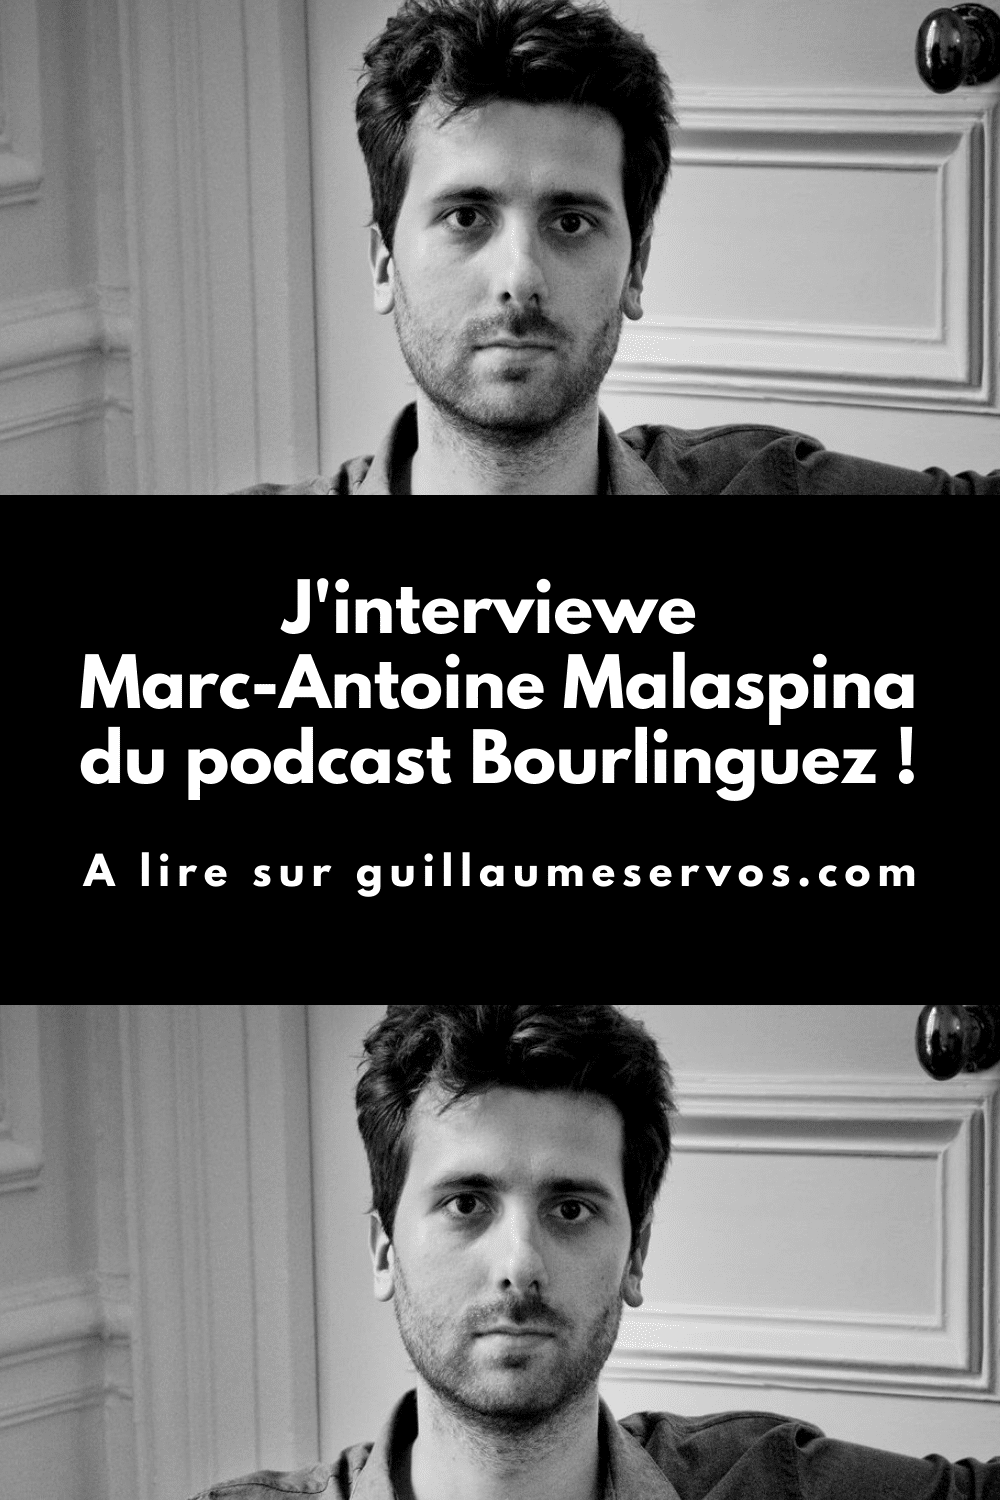 Découvre mon interview avec Marc-Antoine Malaspina du podcast voyage Bourlinguez. Son rapport au podcast, aux réseaux sociaux, au voyage et sa carte blanche.